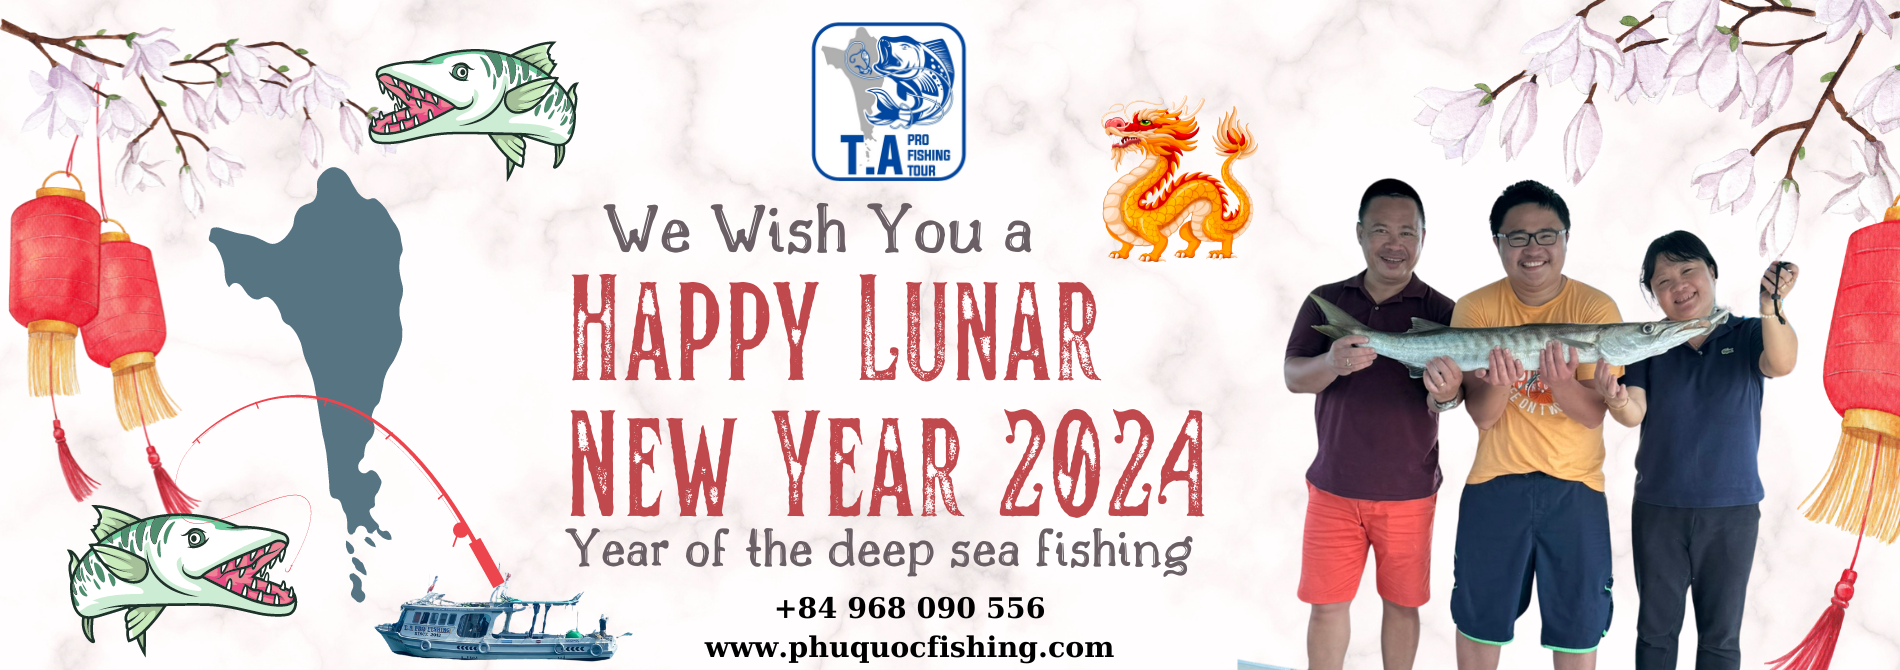 happy_lunar_new_year_2024